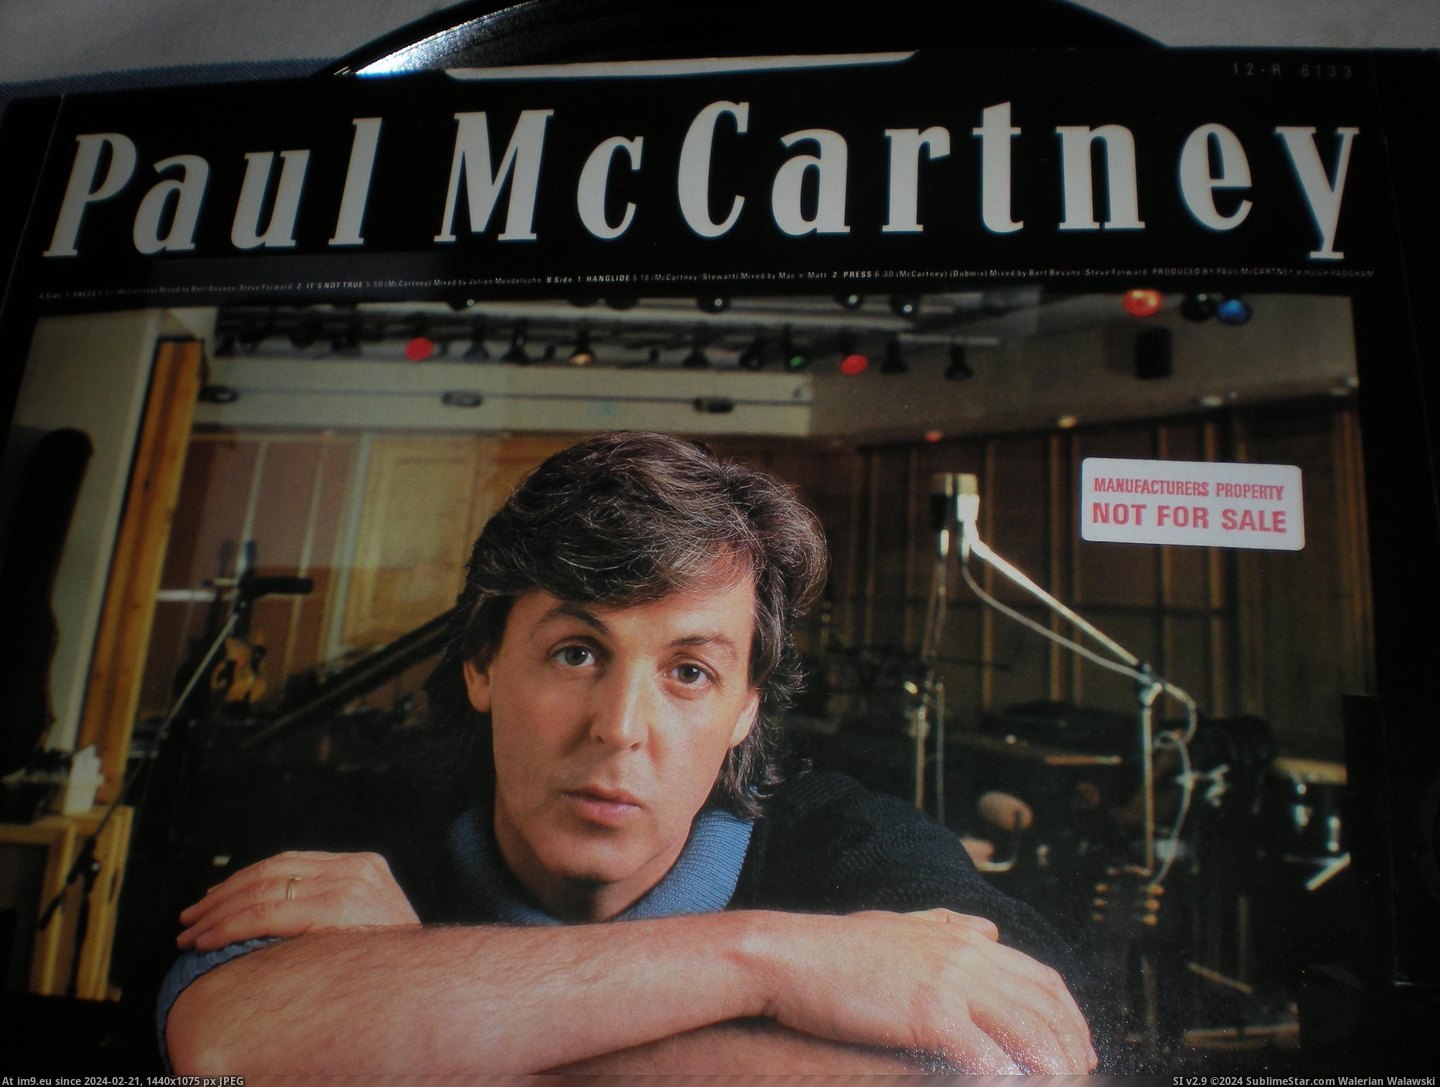 #Press #Mccartney #Demo McCartney Press 45 DEMO 1 Pic. (Изображение из альбом new 1))